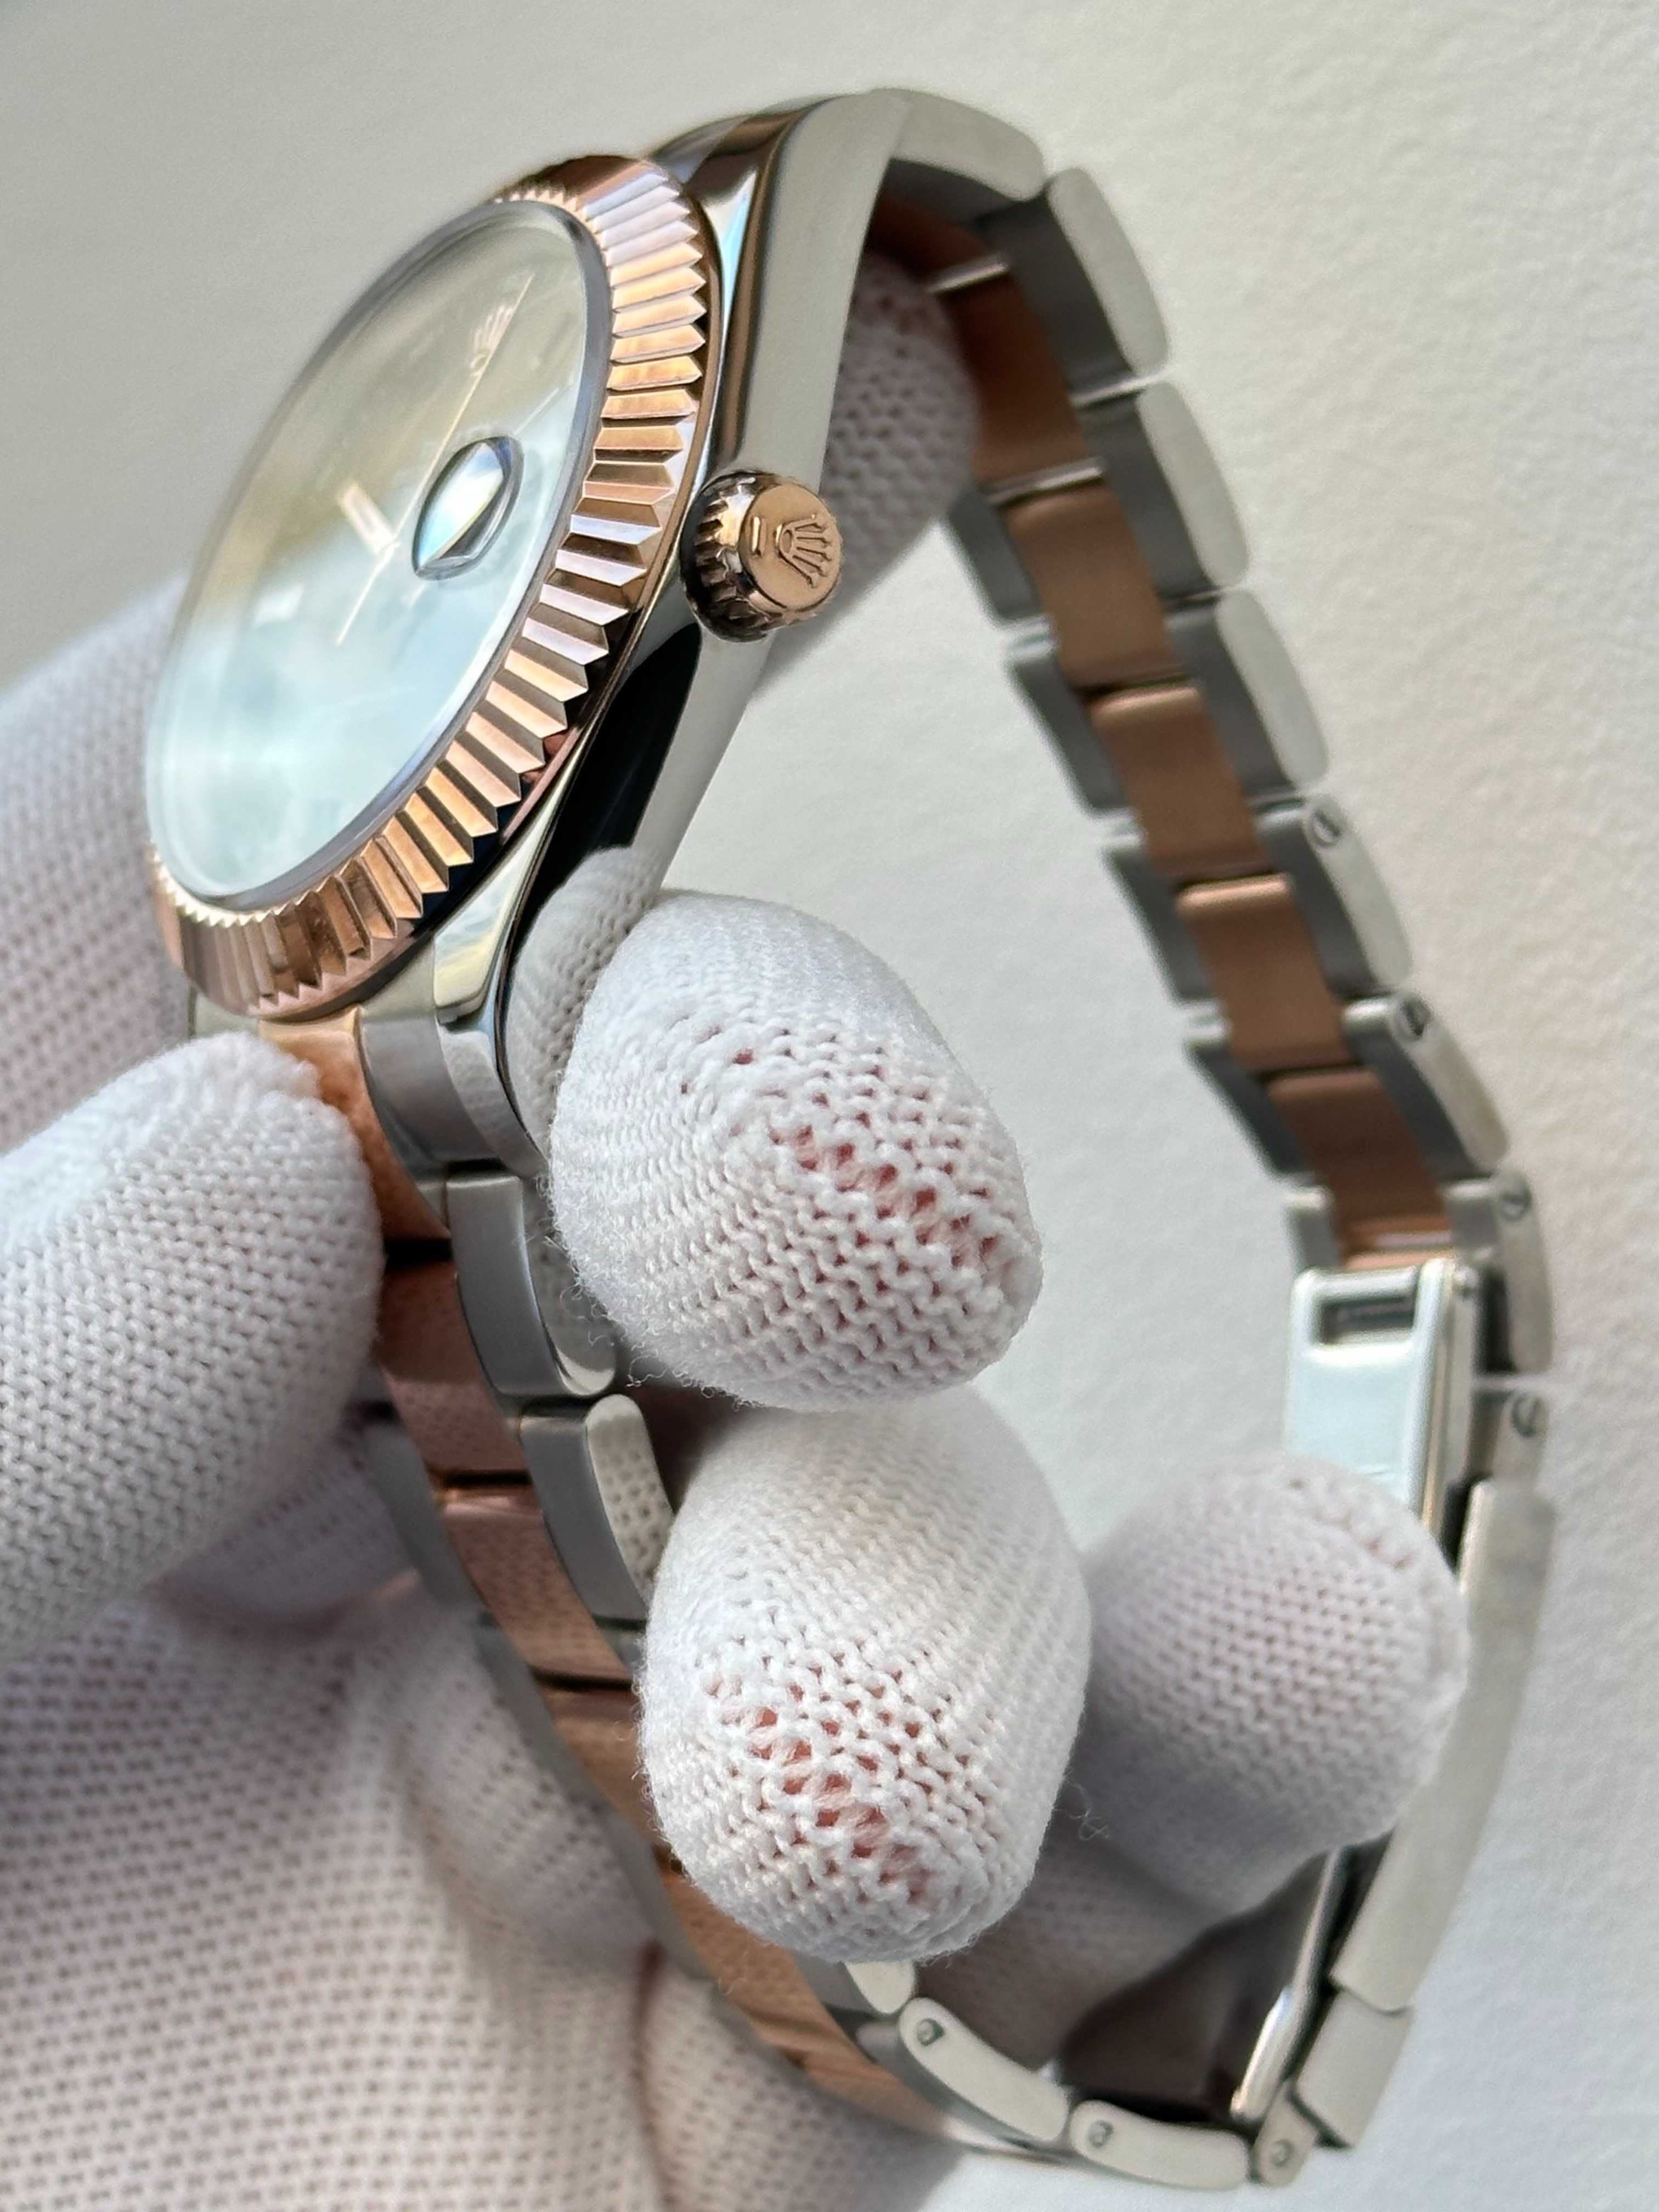 Швейцарские часы Rolex Datejust Wimbledon Gold. Эксклюзивные